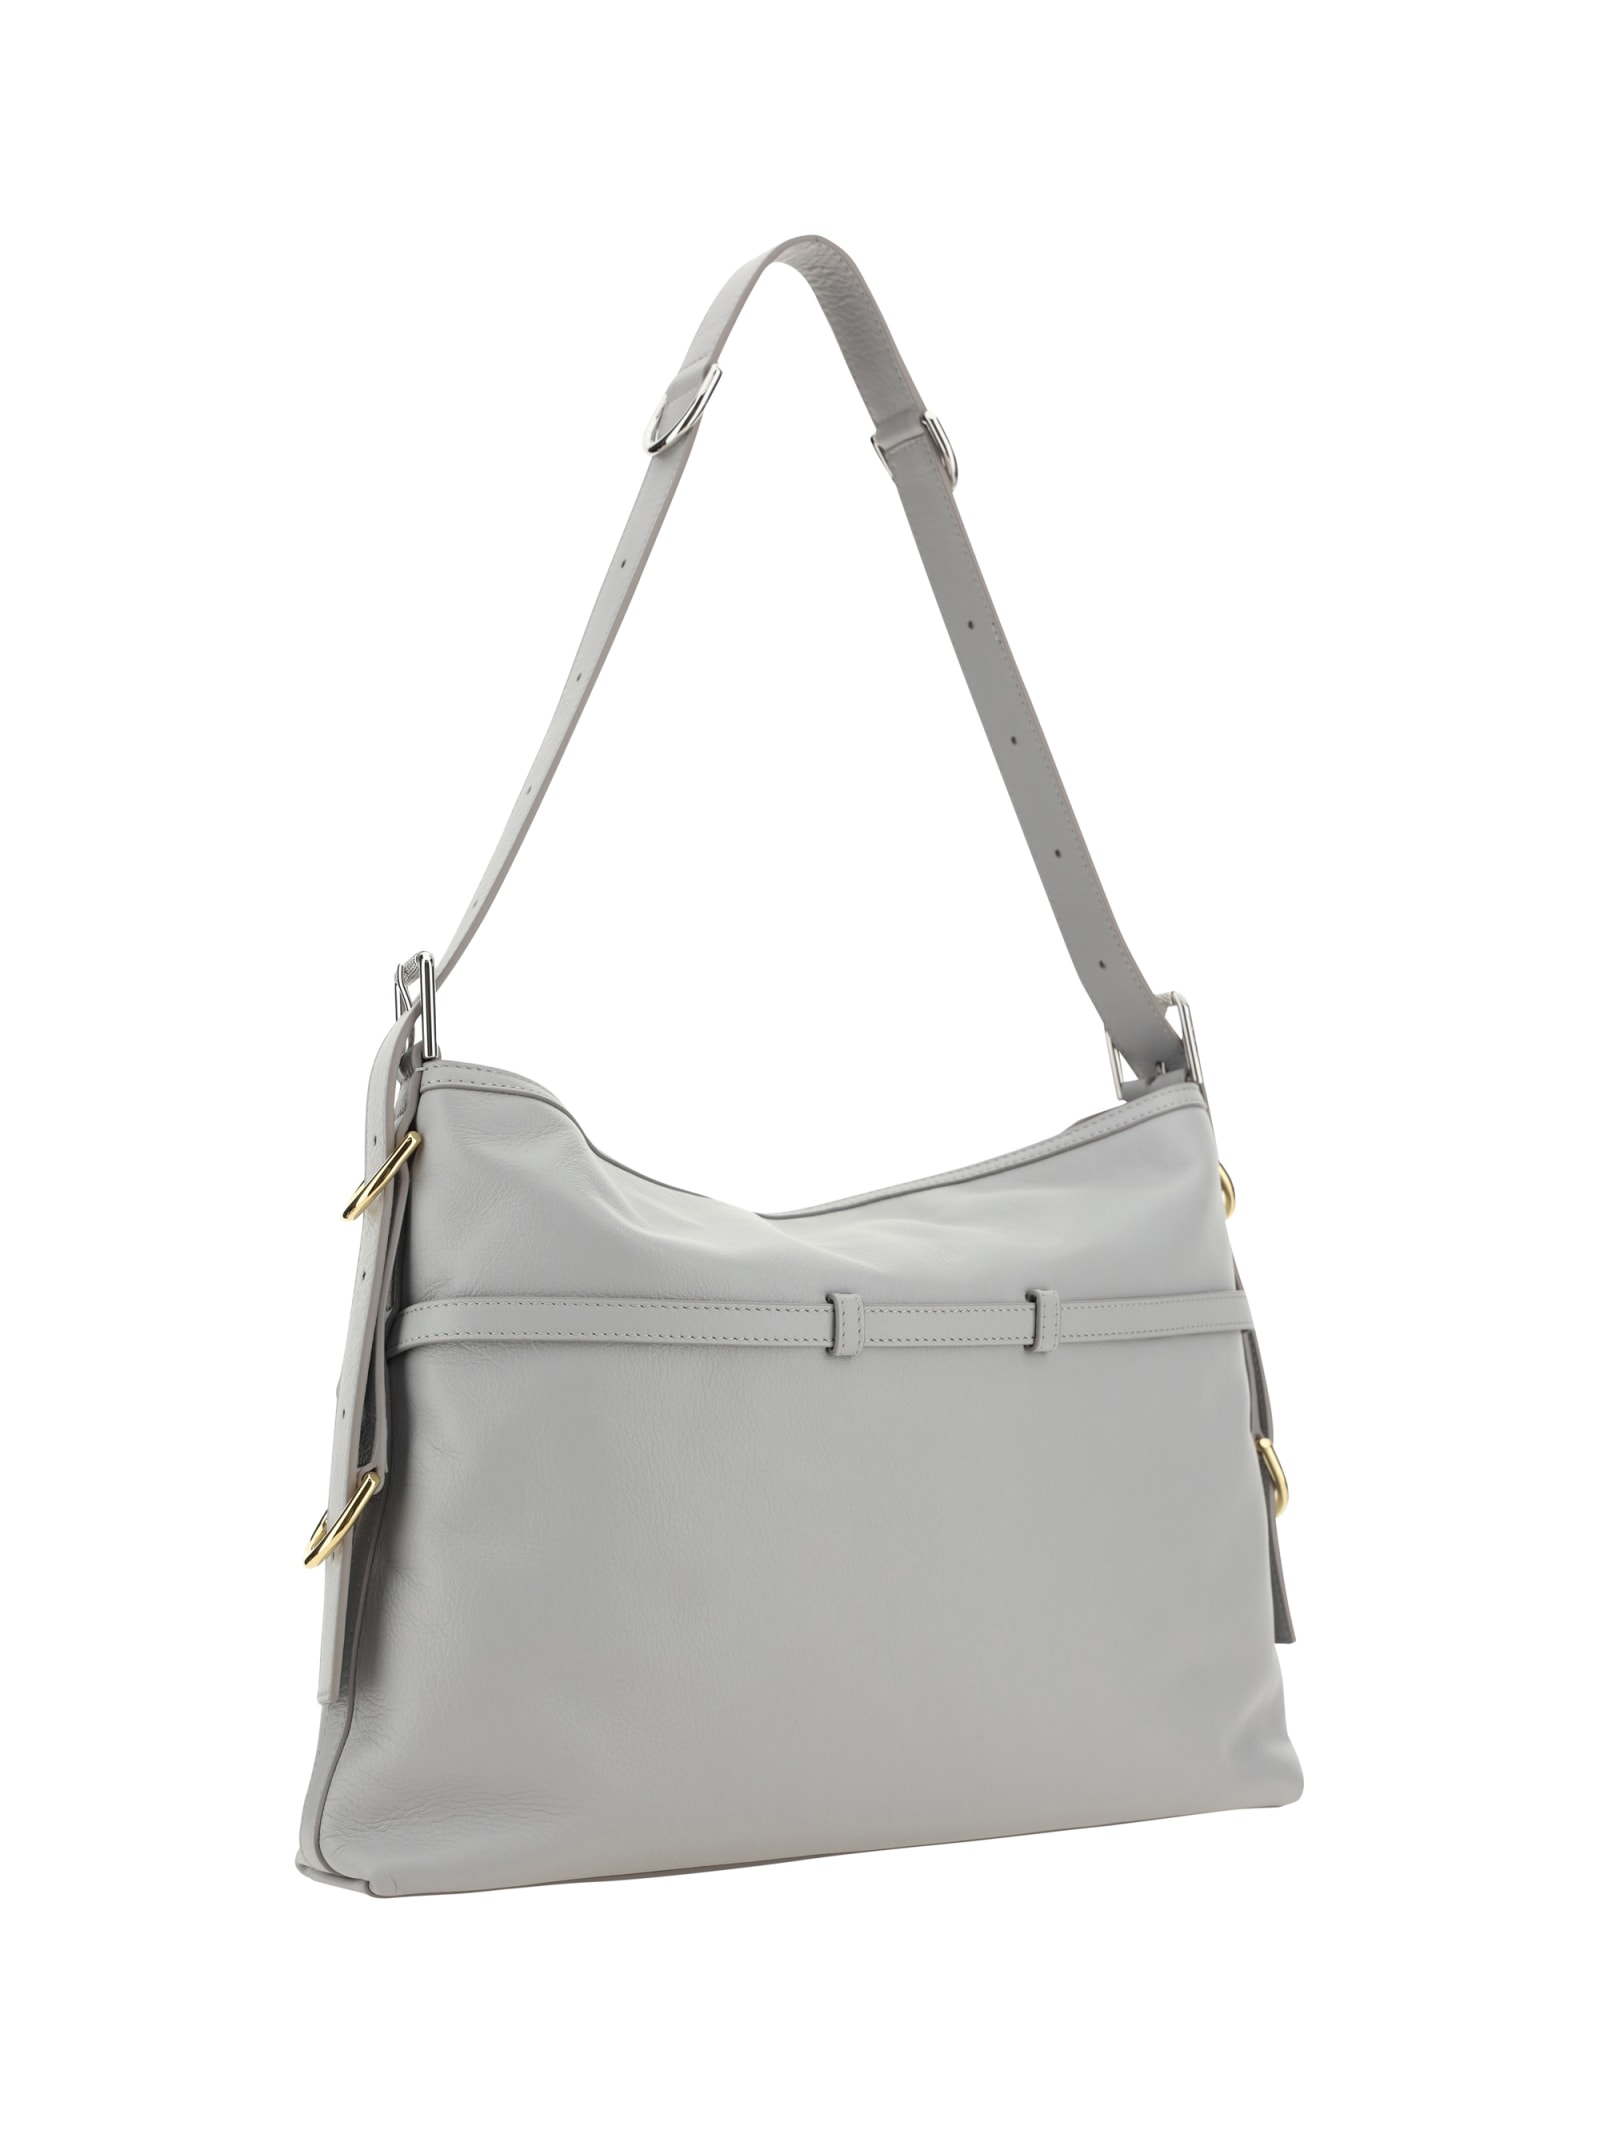 Shop Givenchy Voyou Shoulder Bag In Light Grey